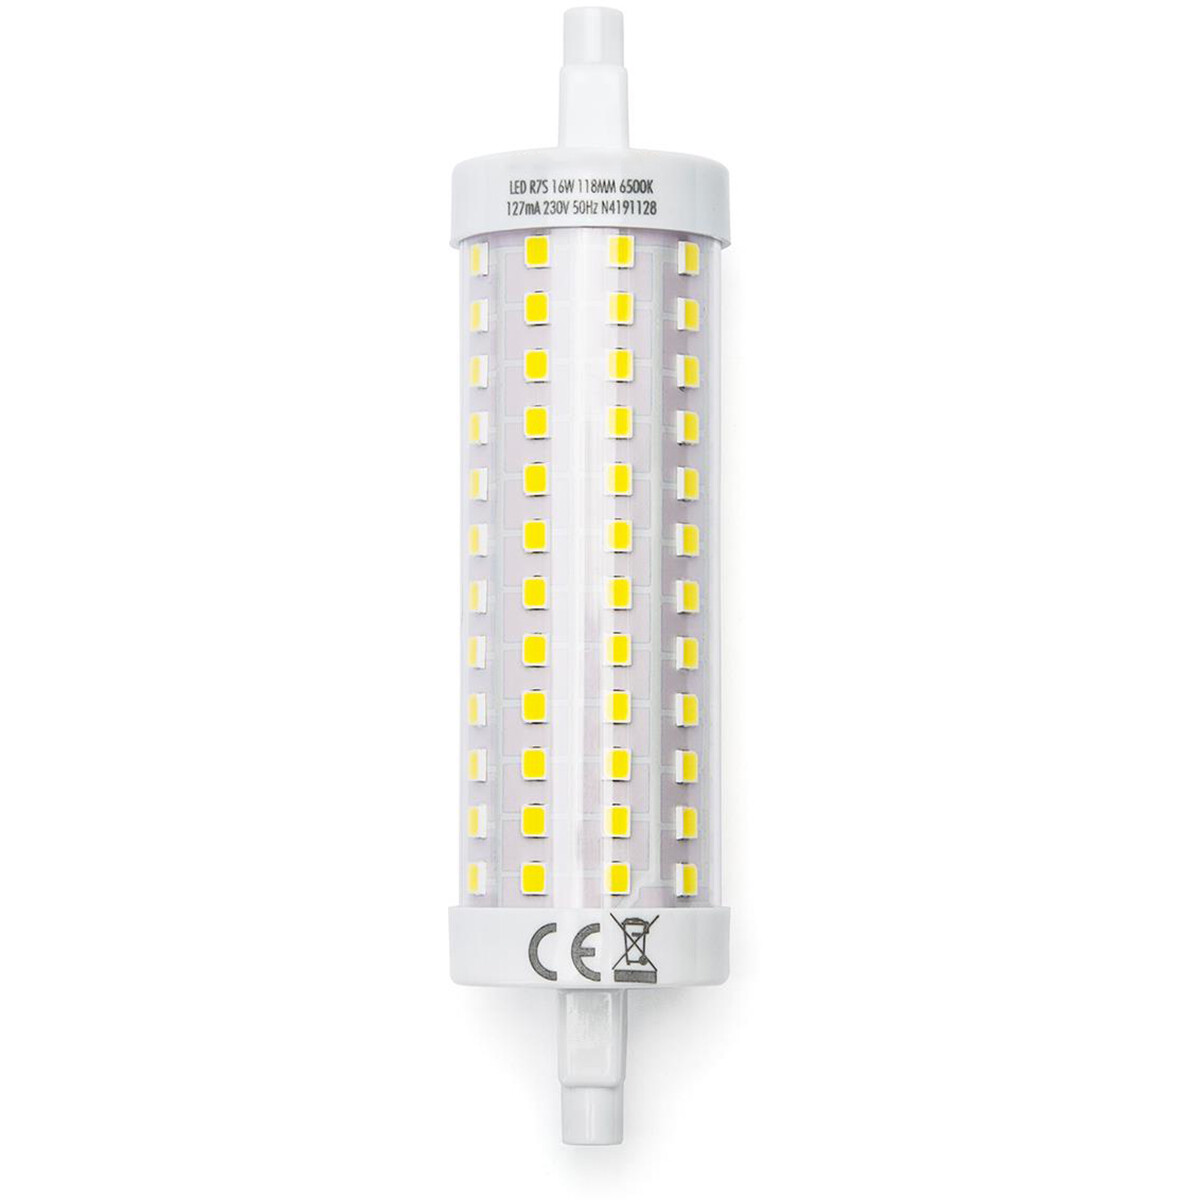 LED Lamp Aigi Trunka R7S Fitting 16W Helder-Koud Wit 6500K Geel Glas